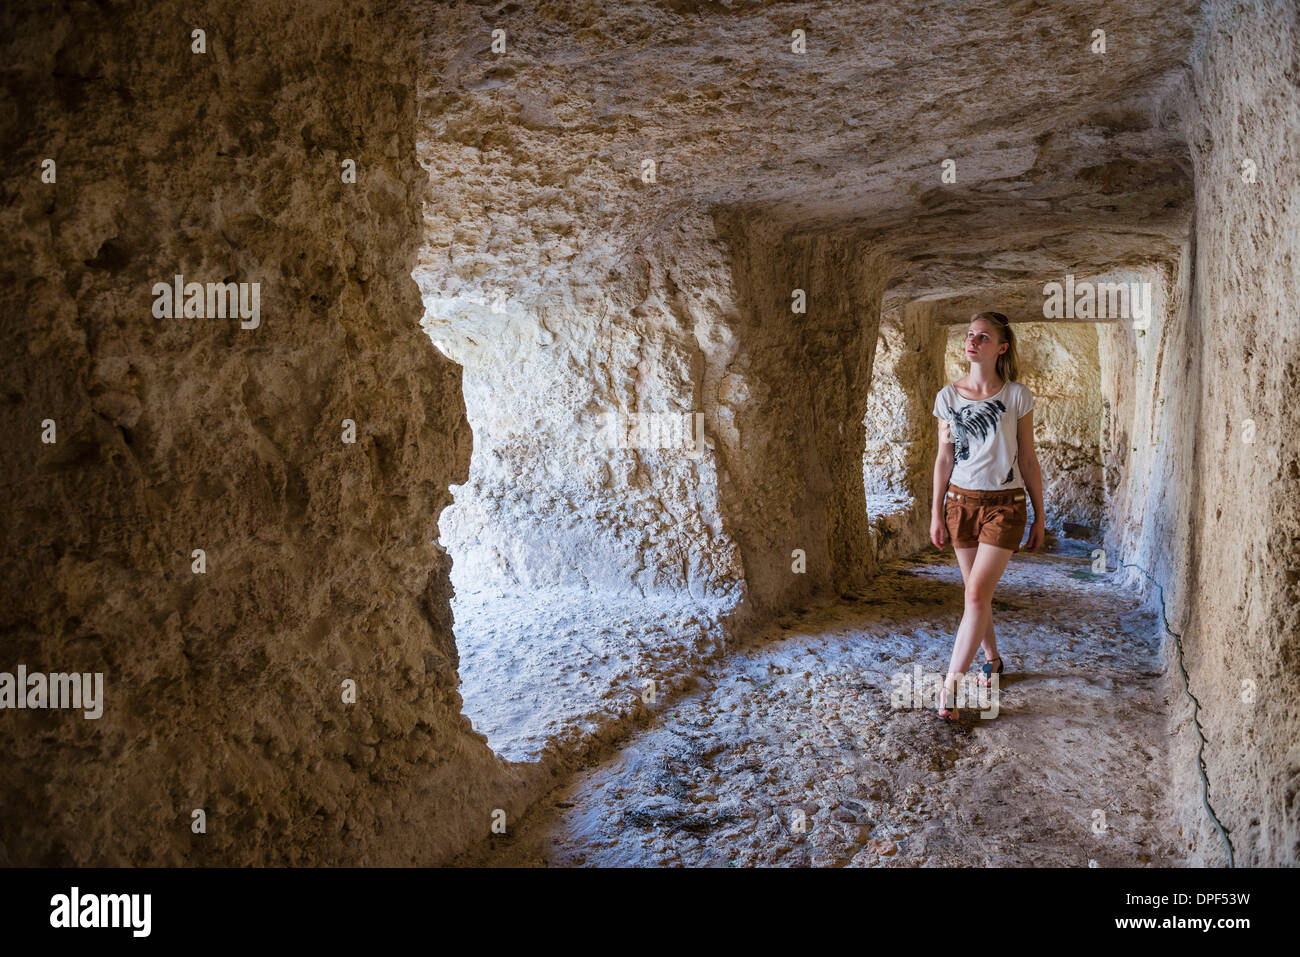 Tourist esplorare i tunnel presso le rovine greche, Castello Eurialo (Castello Eurialo), Siracusa (Siracusa), Sicilia, Italia, Europa Foto Stock